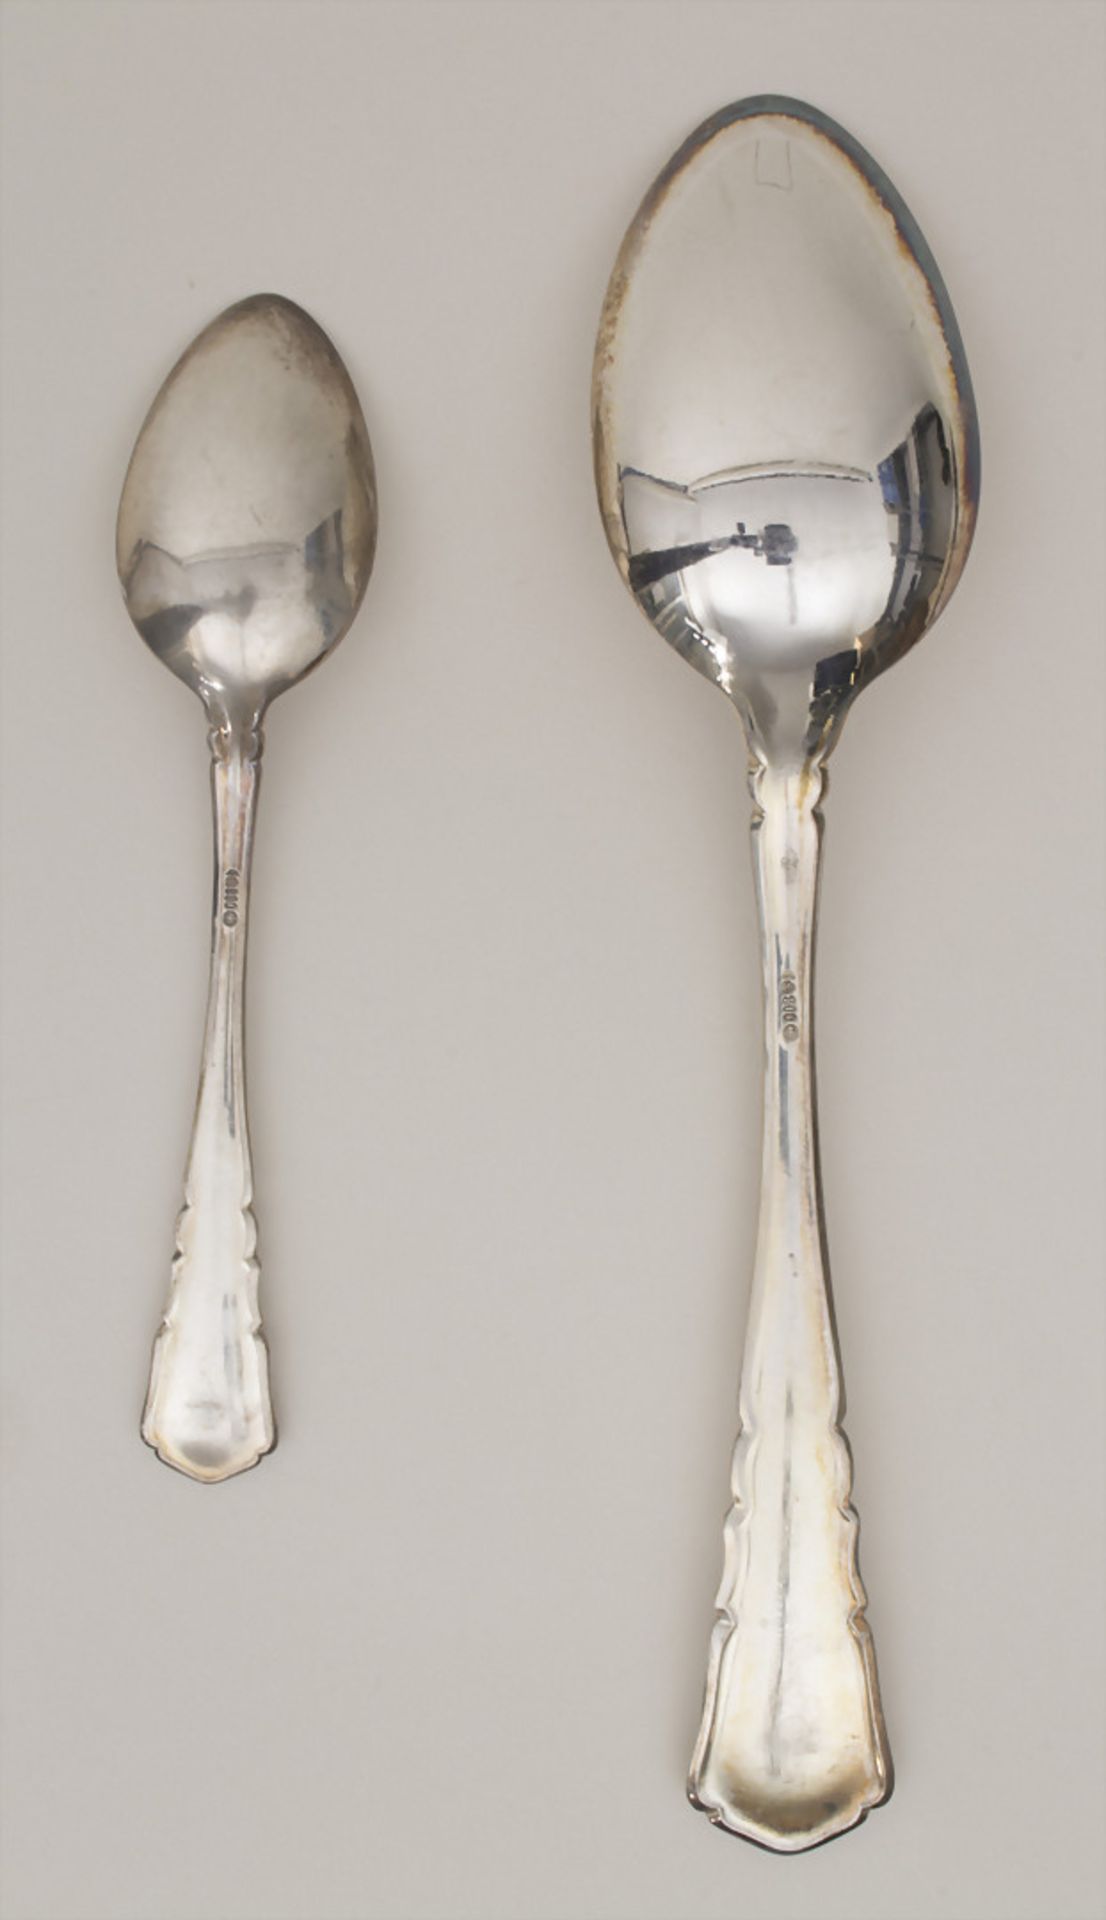 Silberbesteck für 12 Personen mit 2 Silberplatten / A silver cutlery for 12 people with 2 silver - Bild 11 aus 14